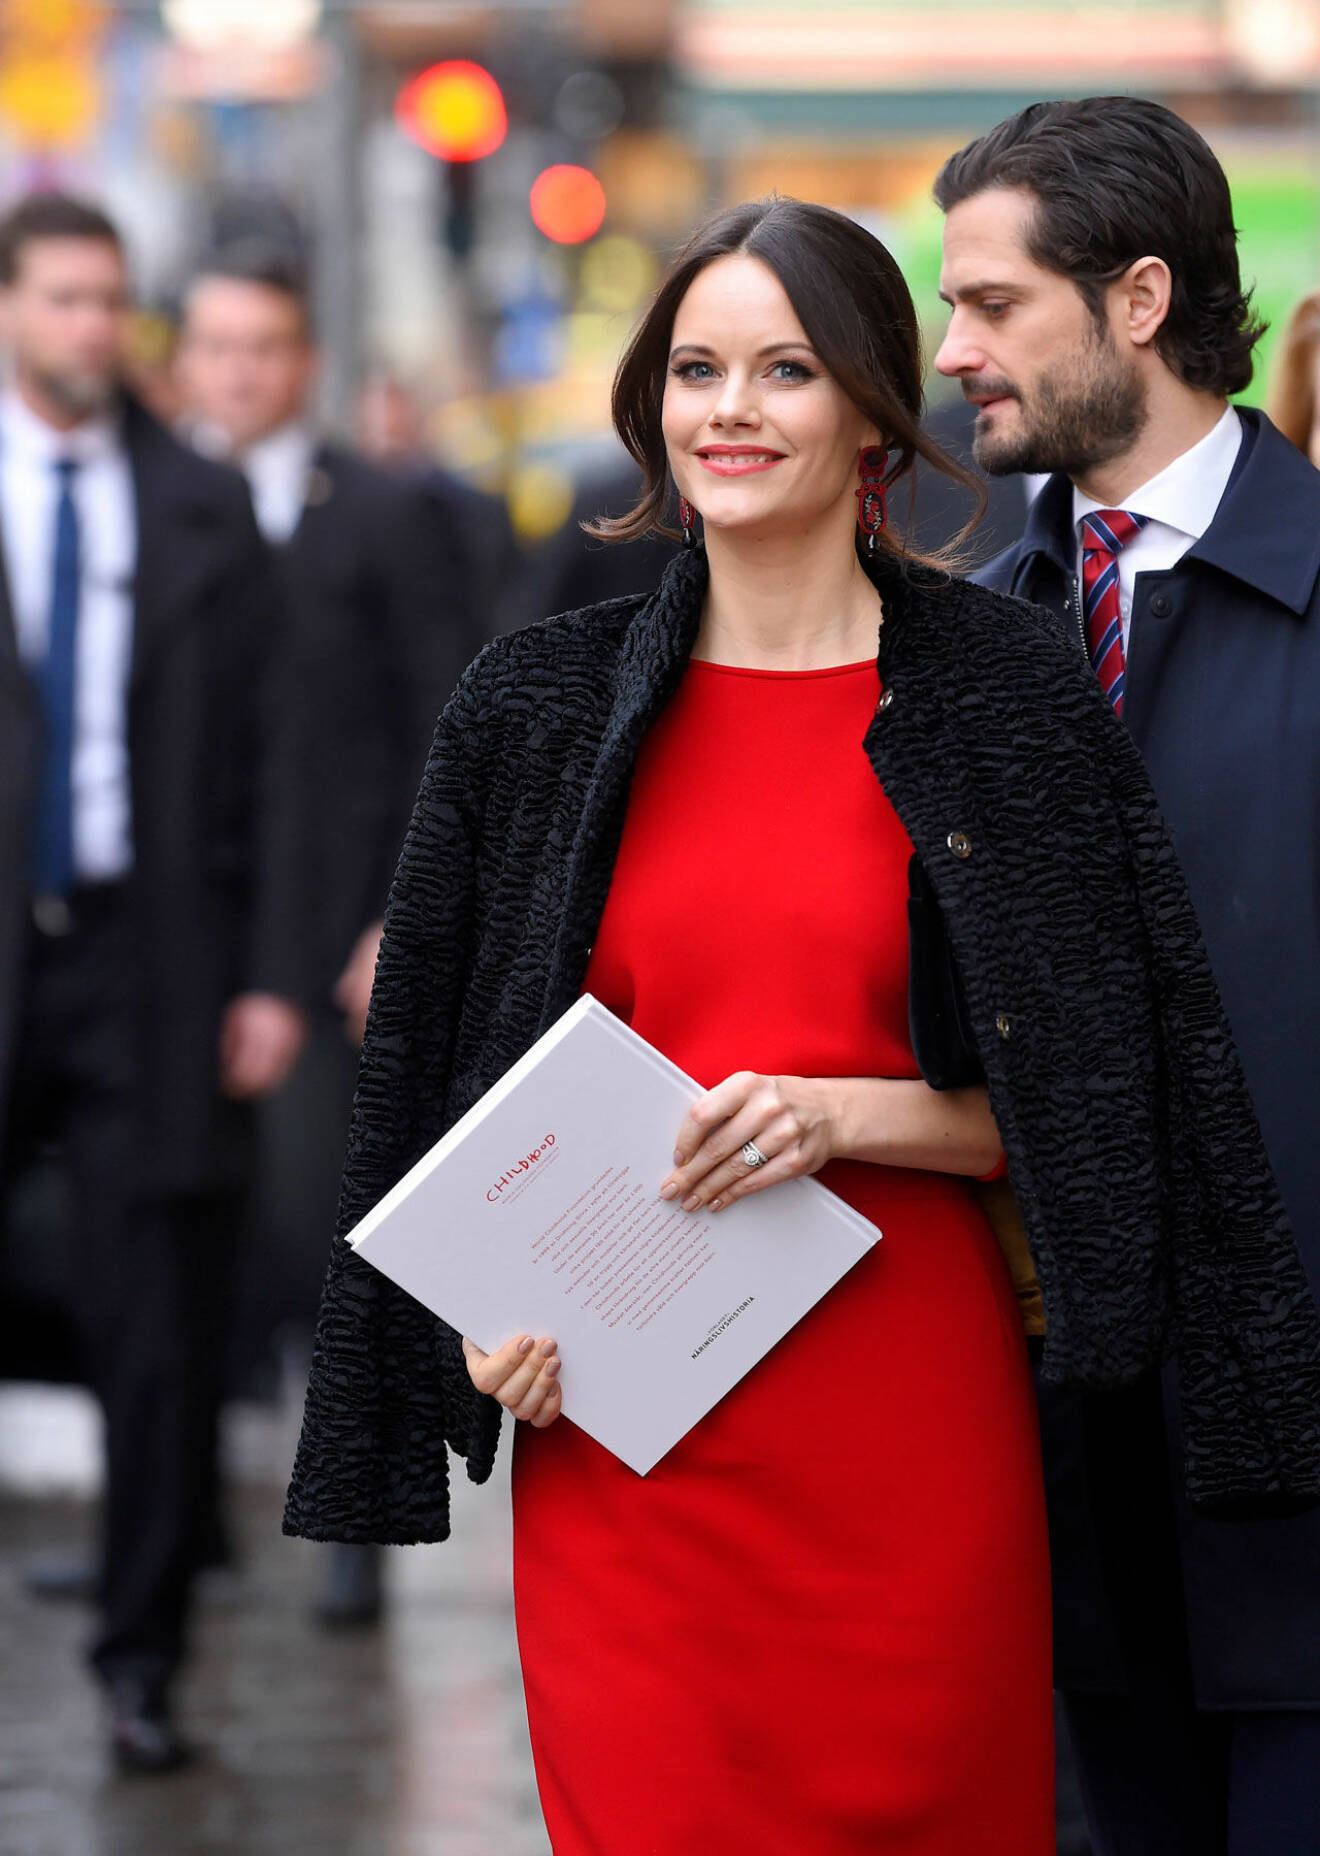 Sofia i röd klänning.